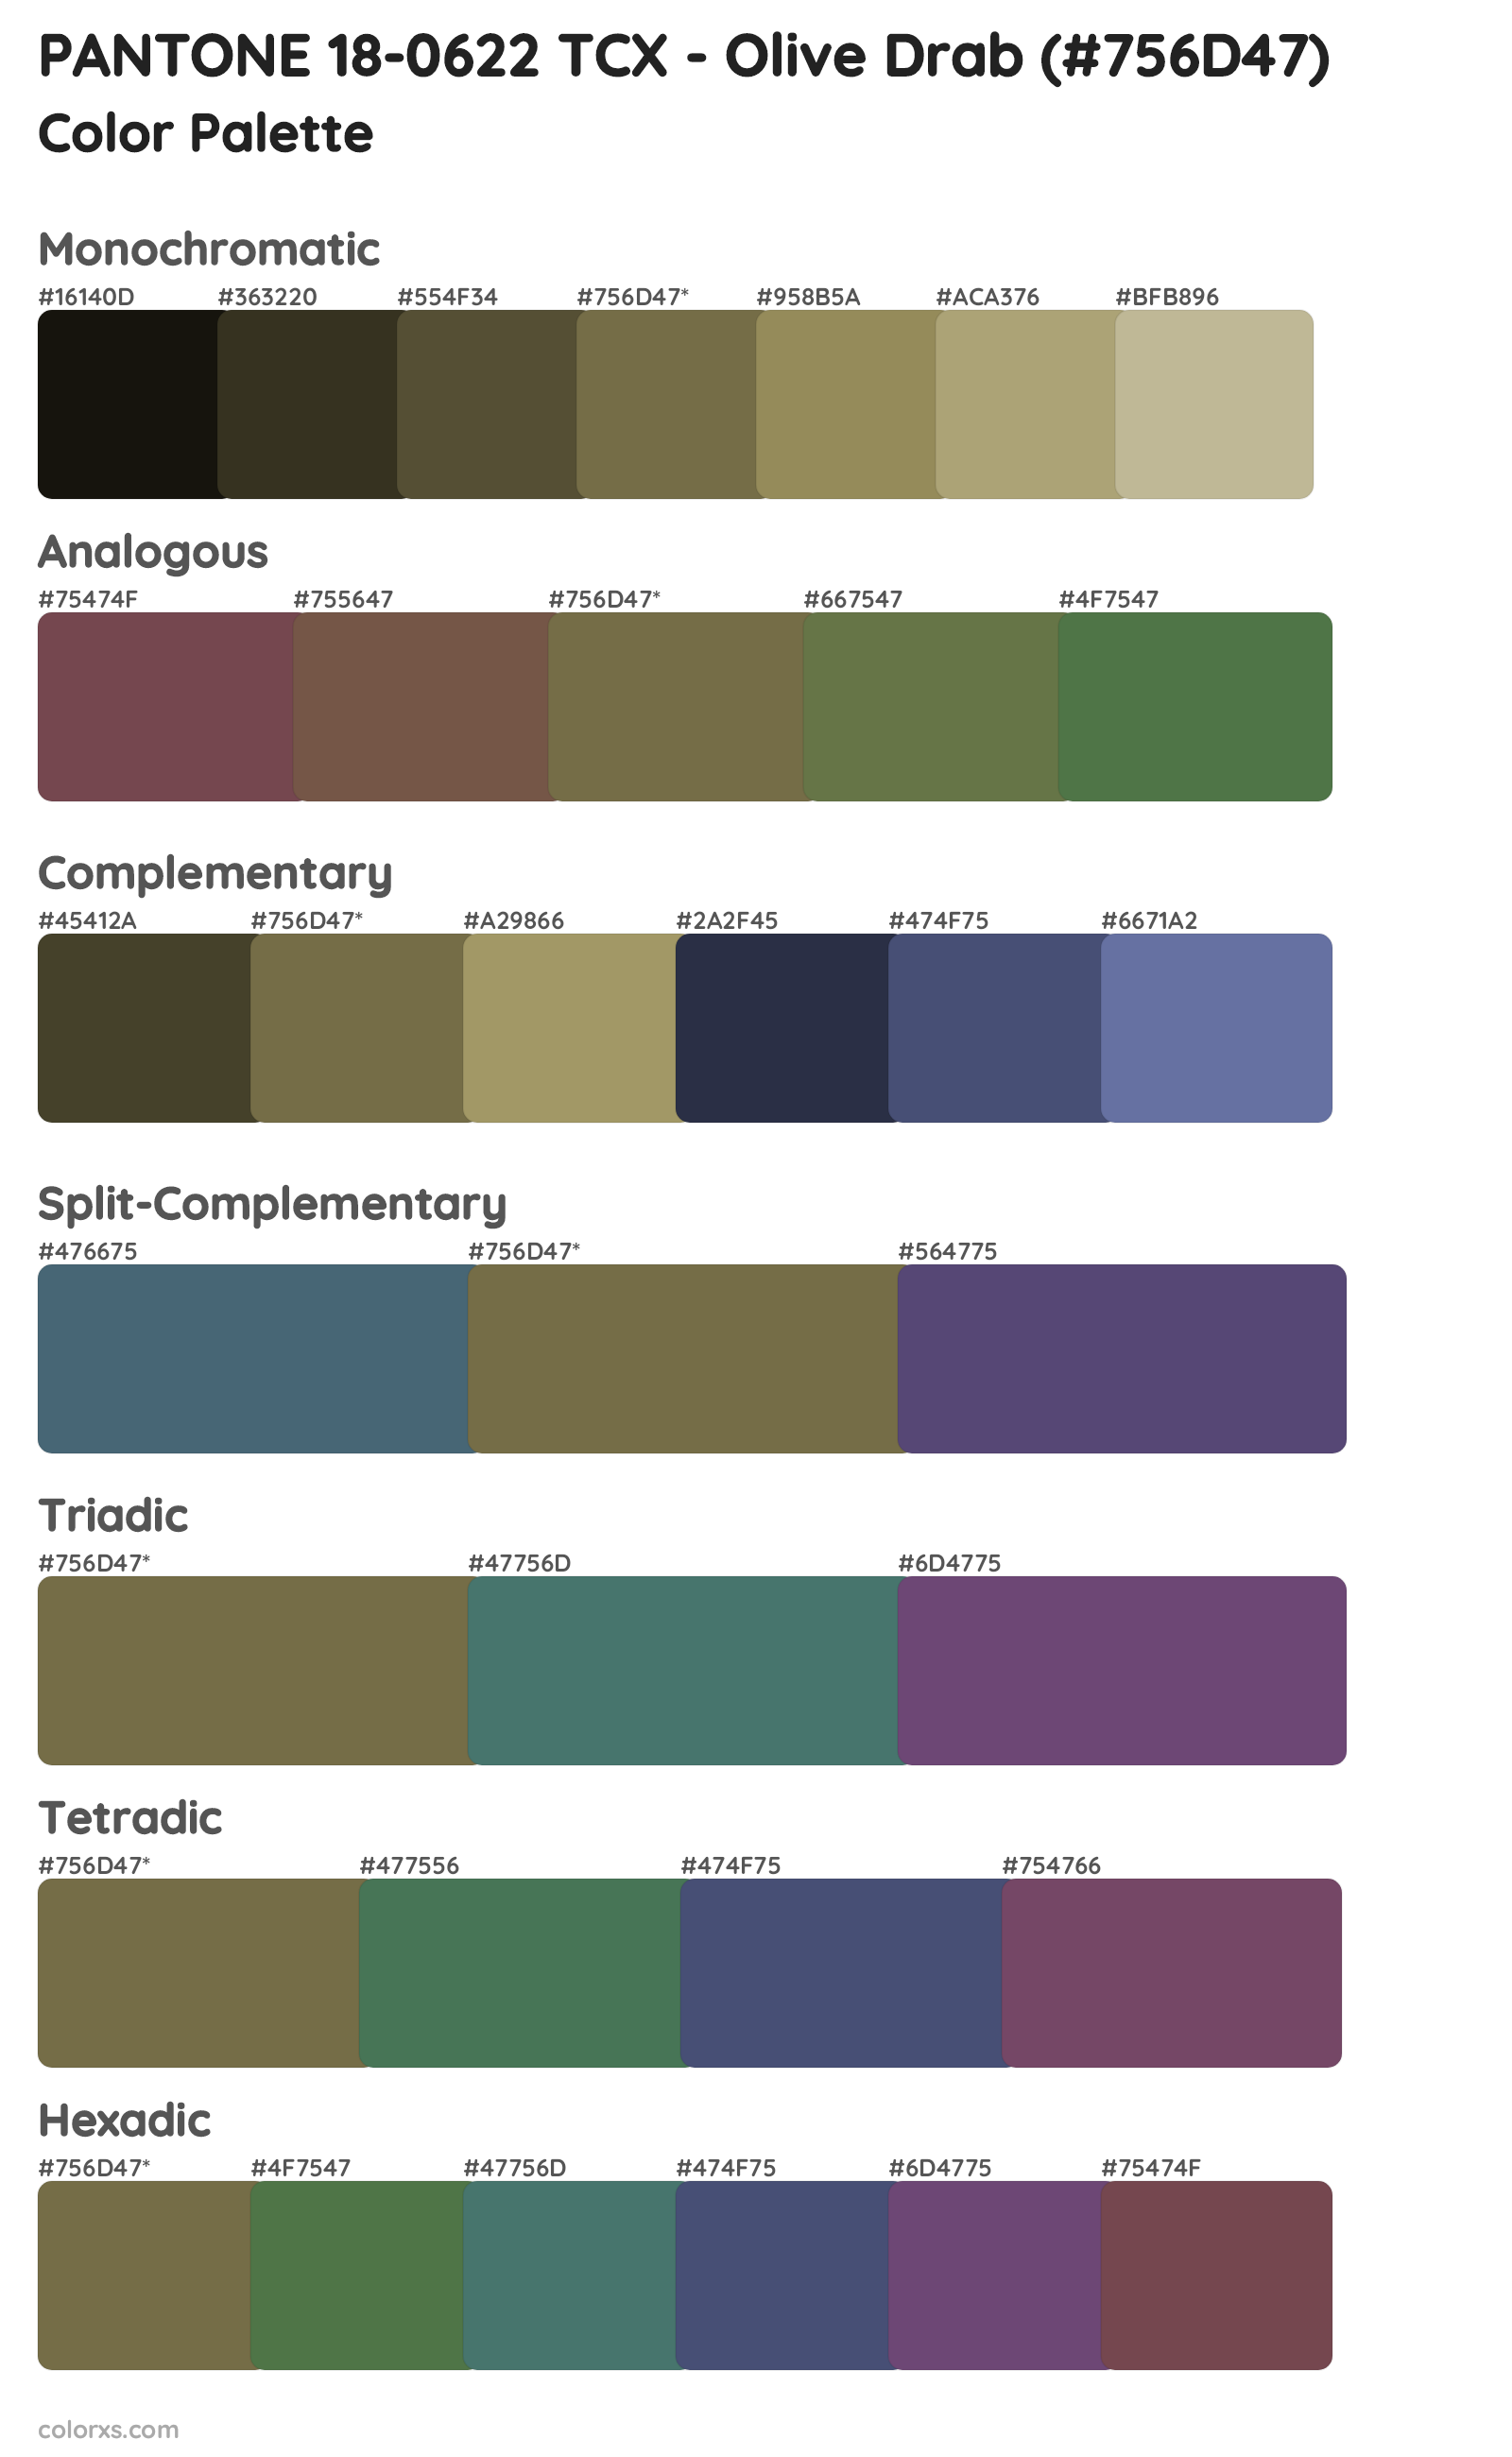 PANTONE 18-0622 TCX - Olive Drab color palettes and color scheme ...